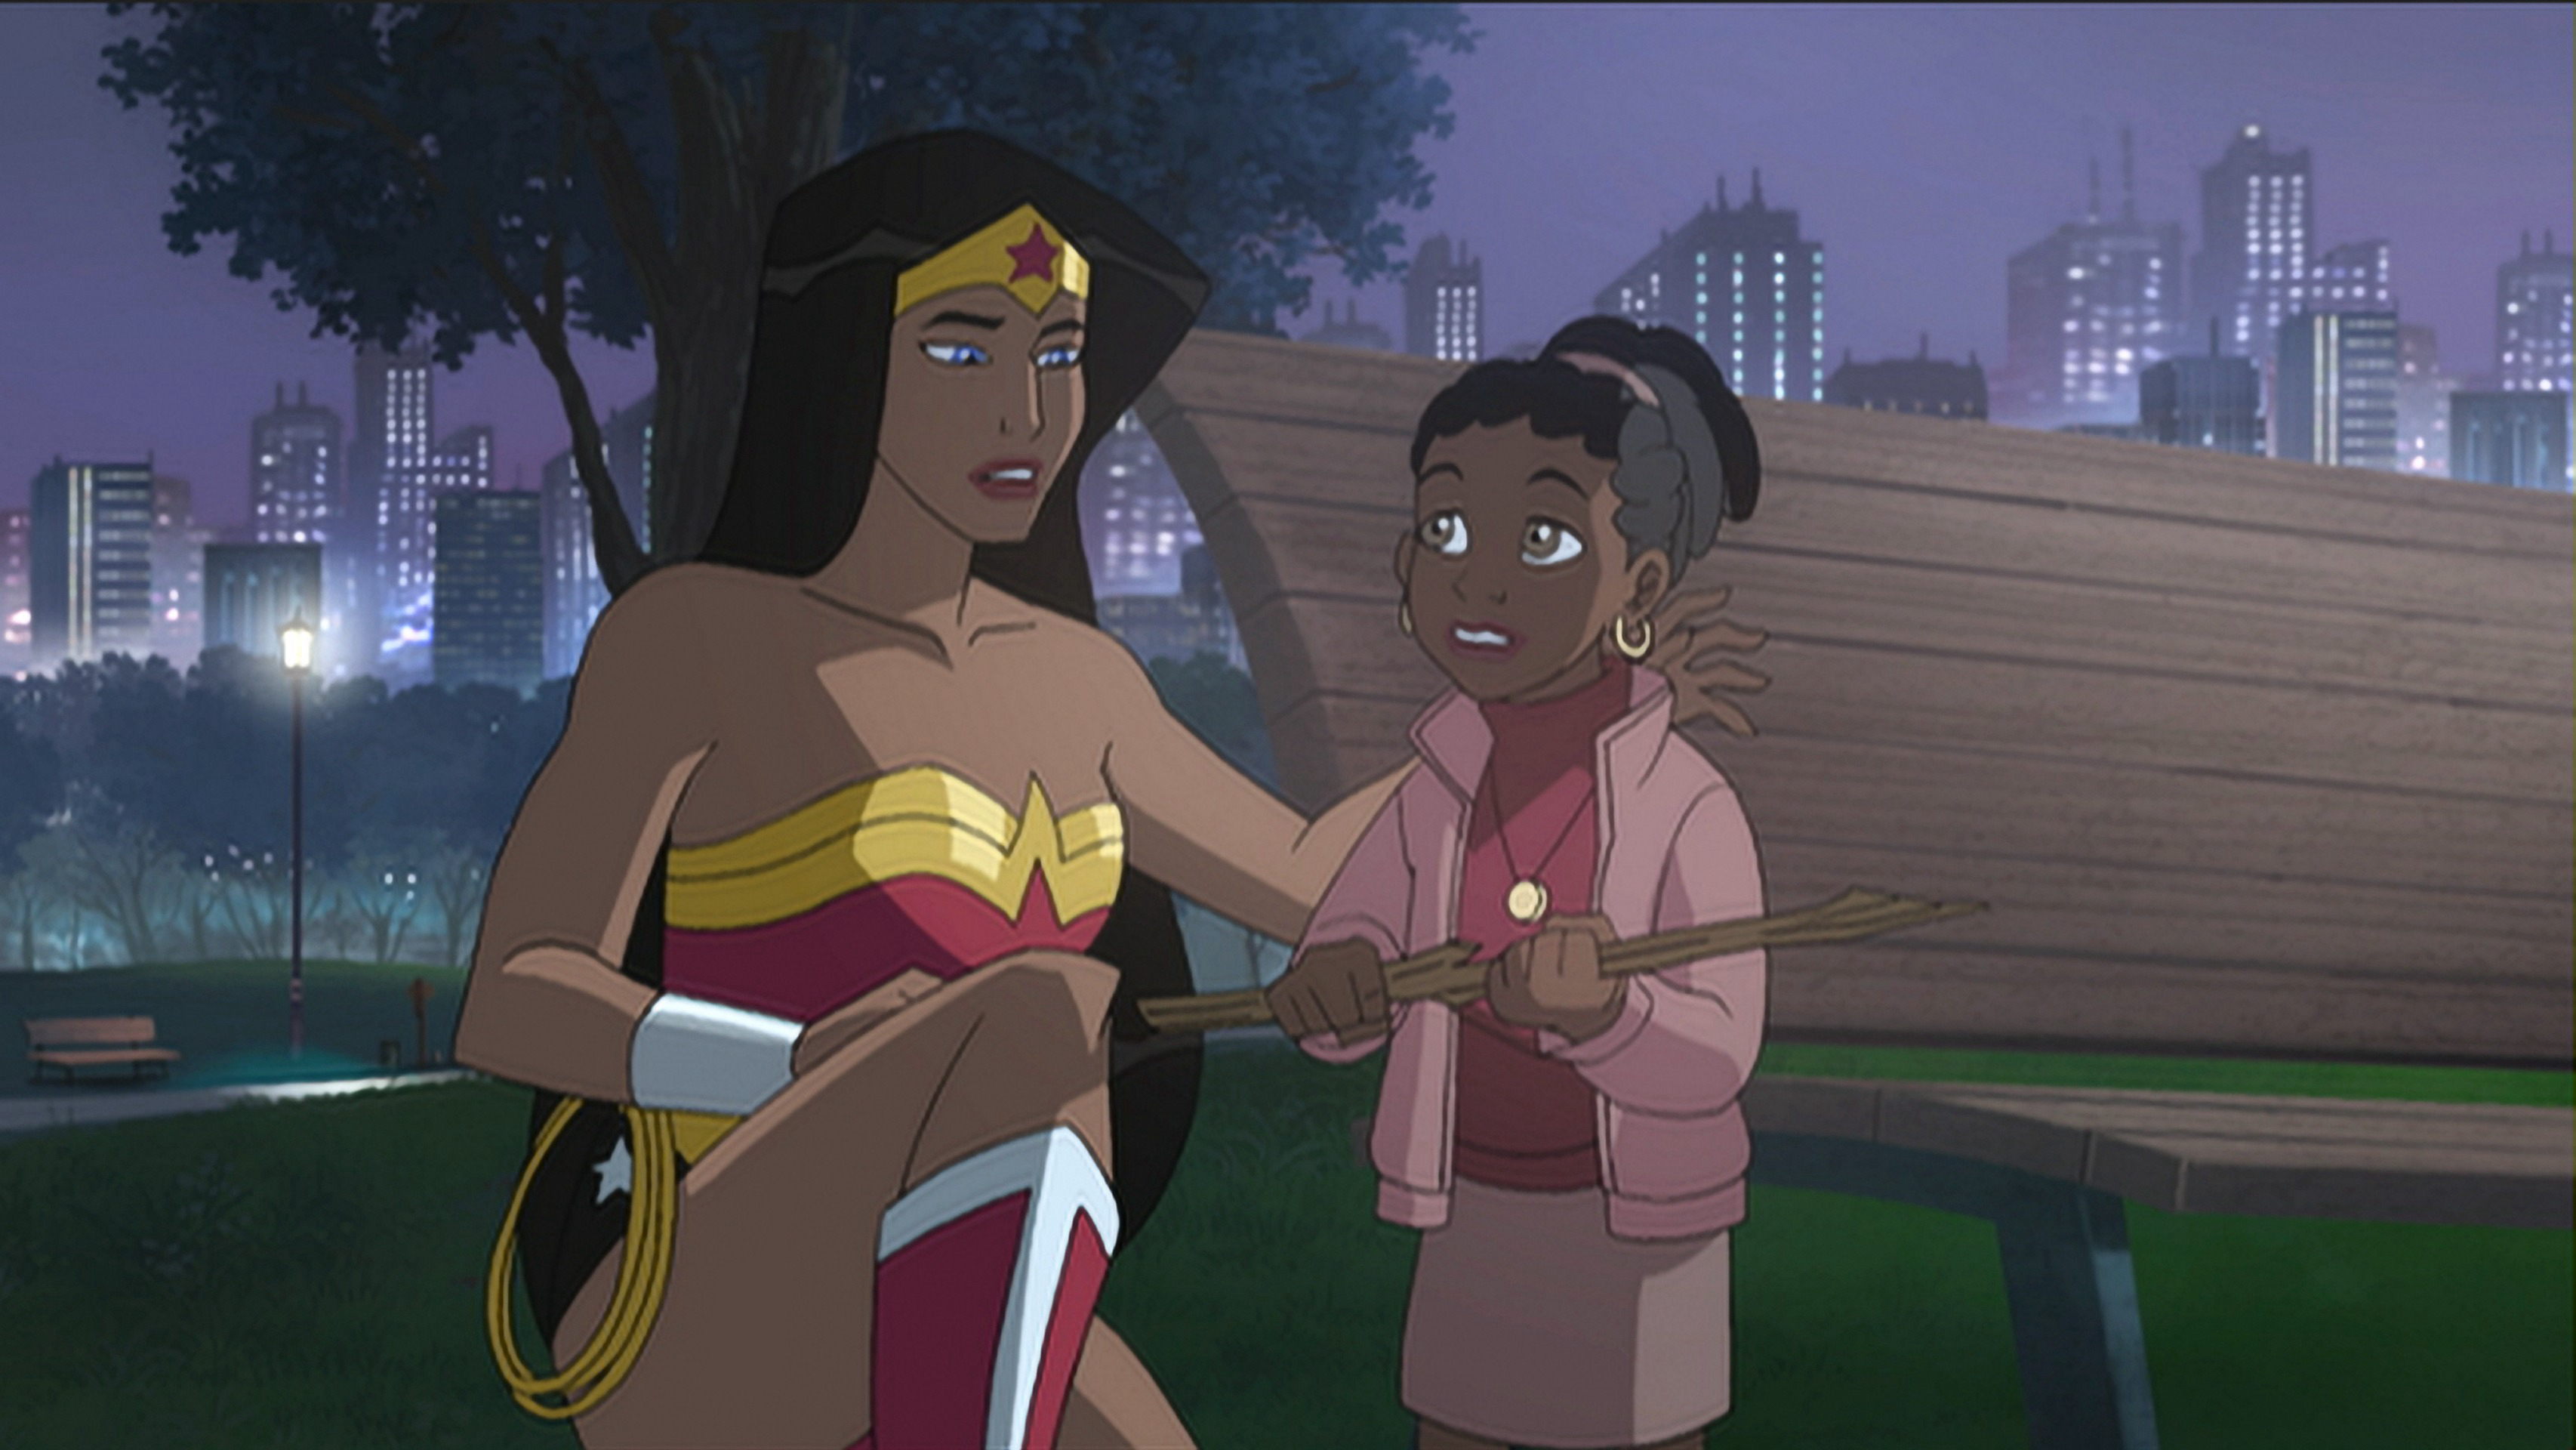 Công Chúa Biến Binh - Wonder Woman (2009)